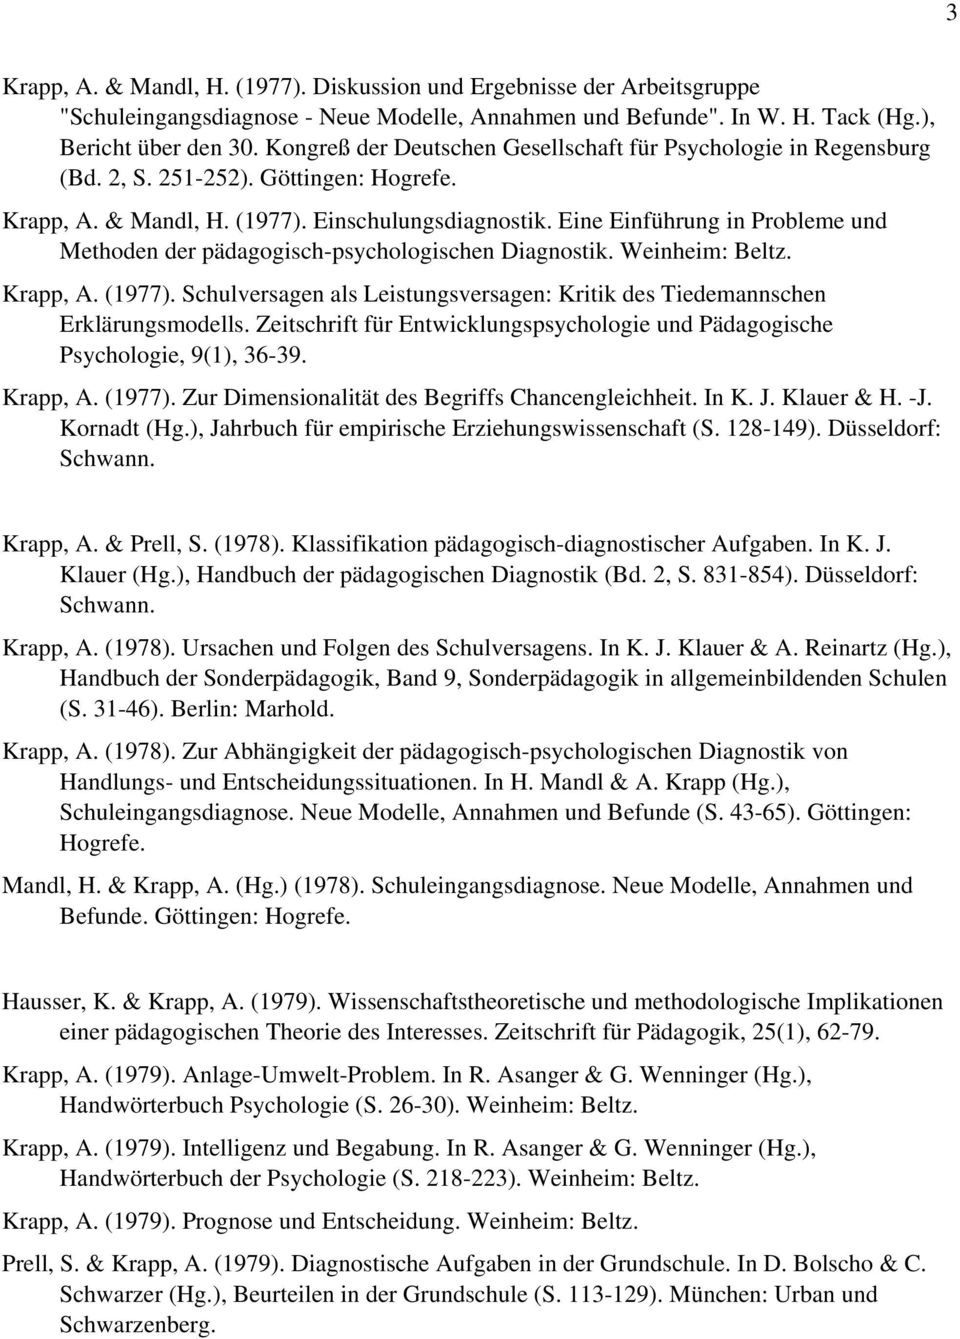 Eine Einführung in Probleme und Methoden der pädagogisch-psychologischen Diagnostik. Weinheim: Beltz. Krapp, A. (1977).